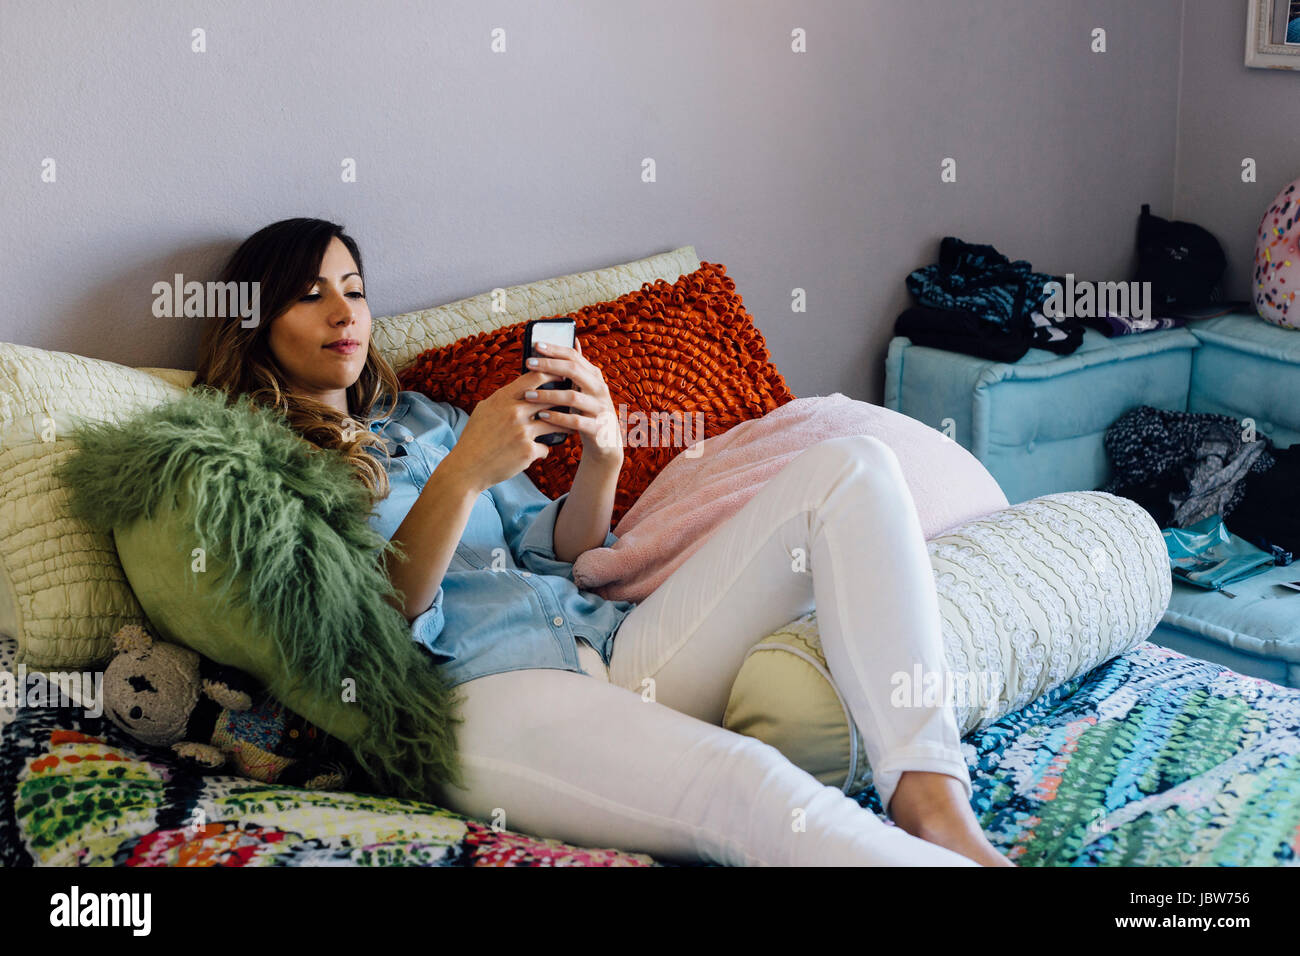 Jeune femme couchée sur un lit shabby chic looking at smartphone Banque D'Images